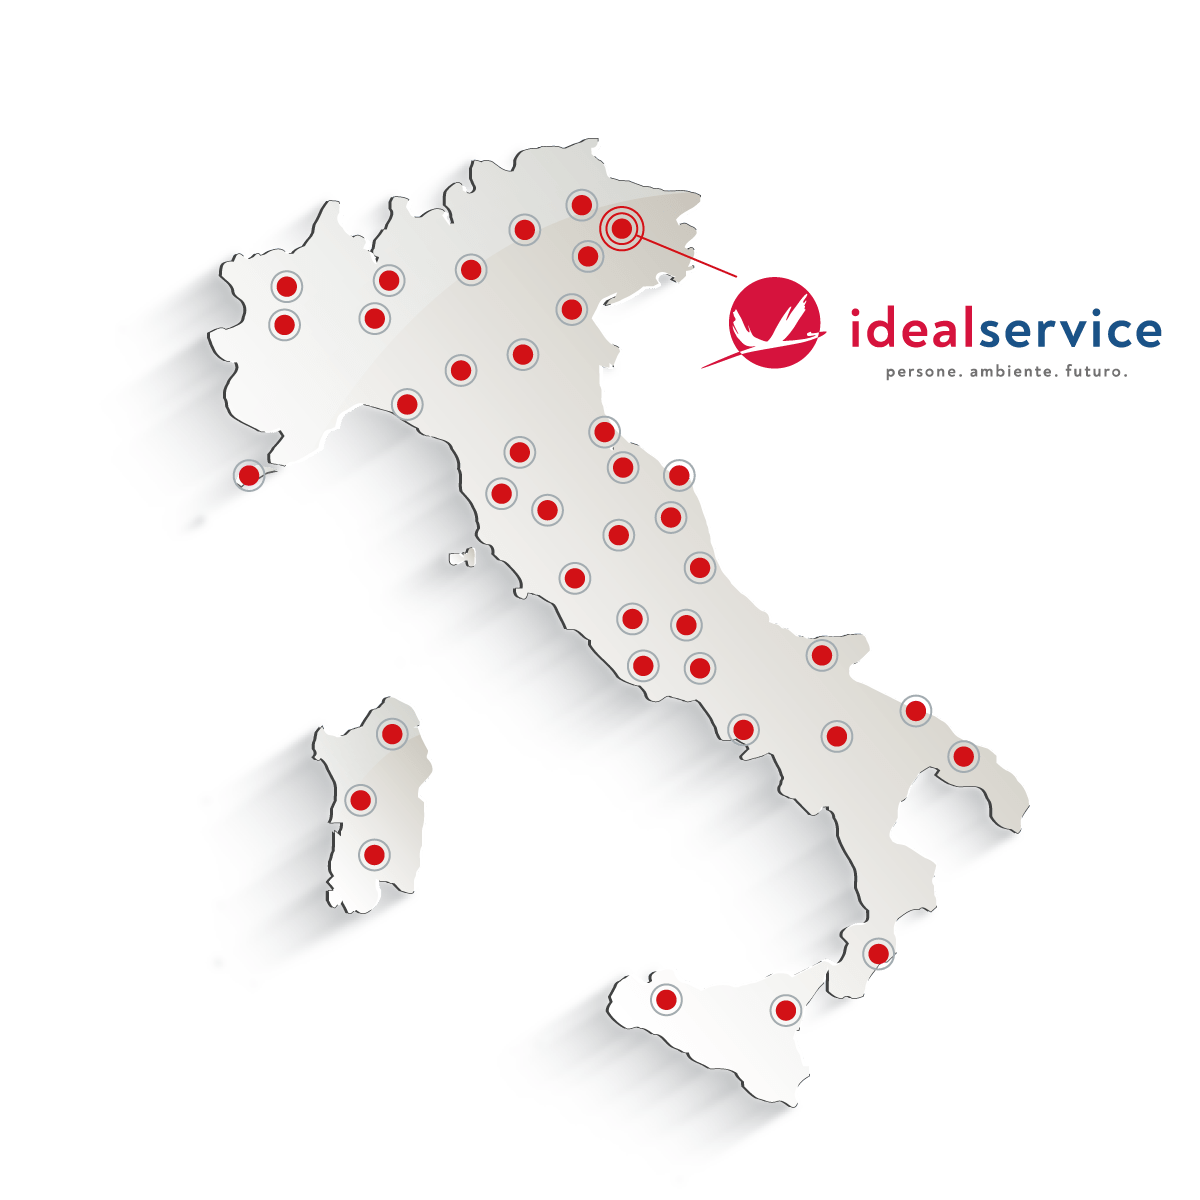 Ideal Service - Bagni Mobili & WC Chimici a Udine